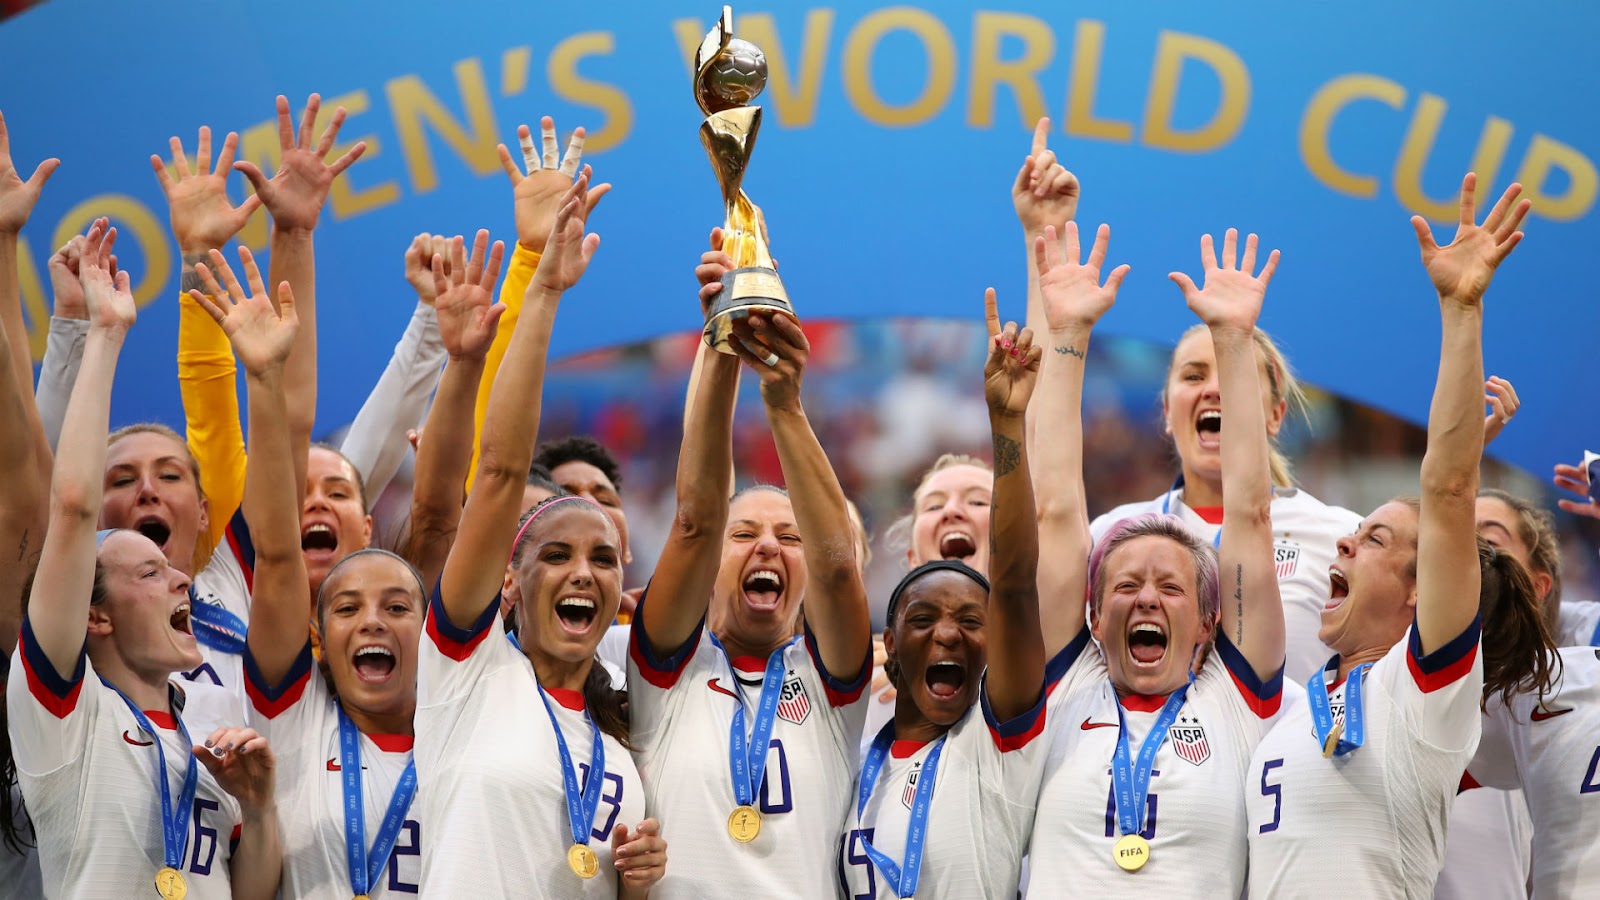 Pesepak Bola Wanita Menorehkan Sejarah Baru